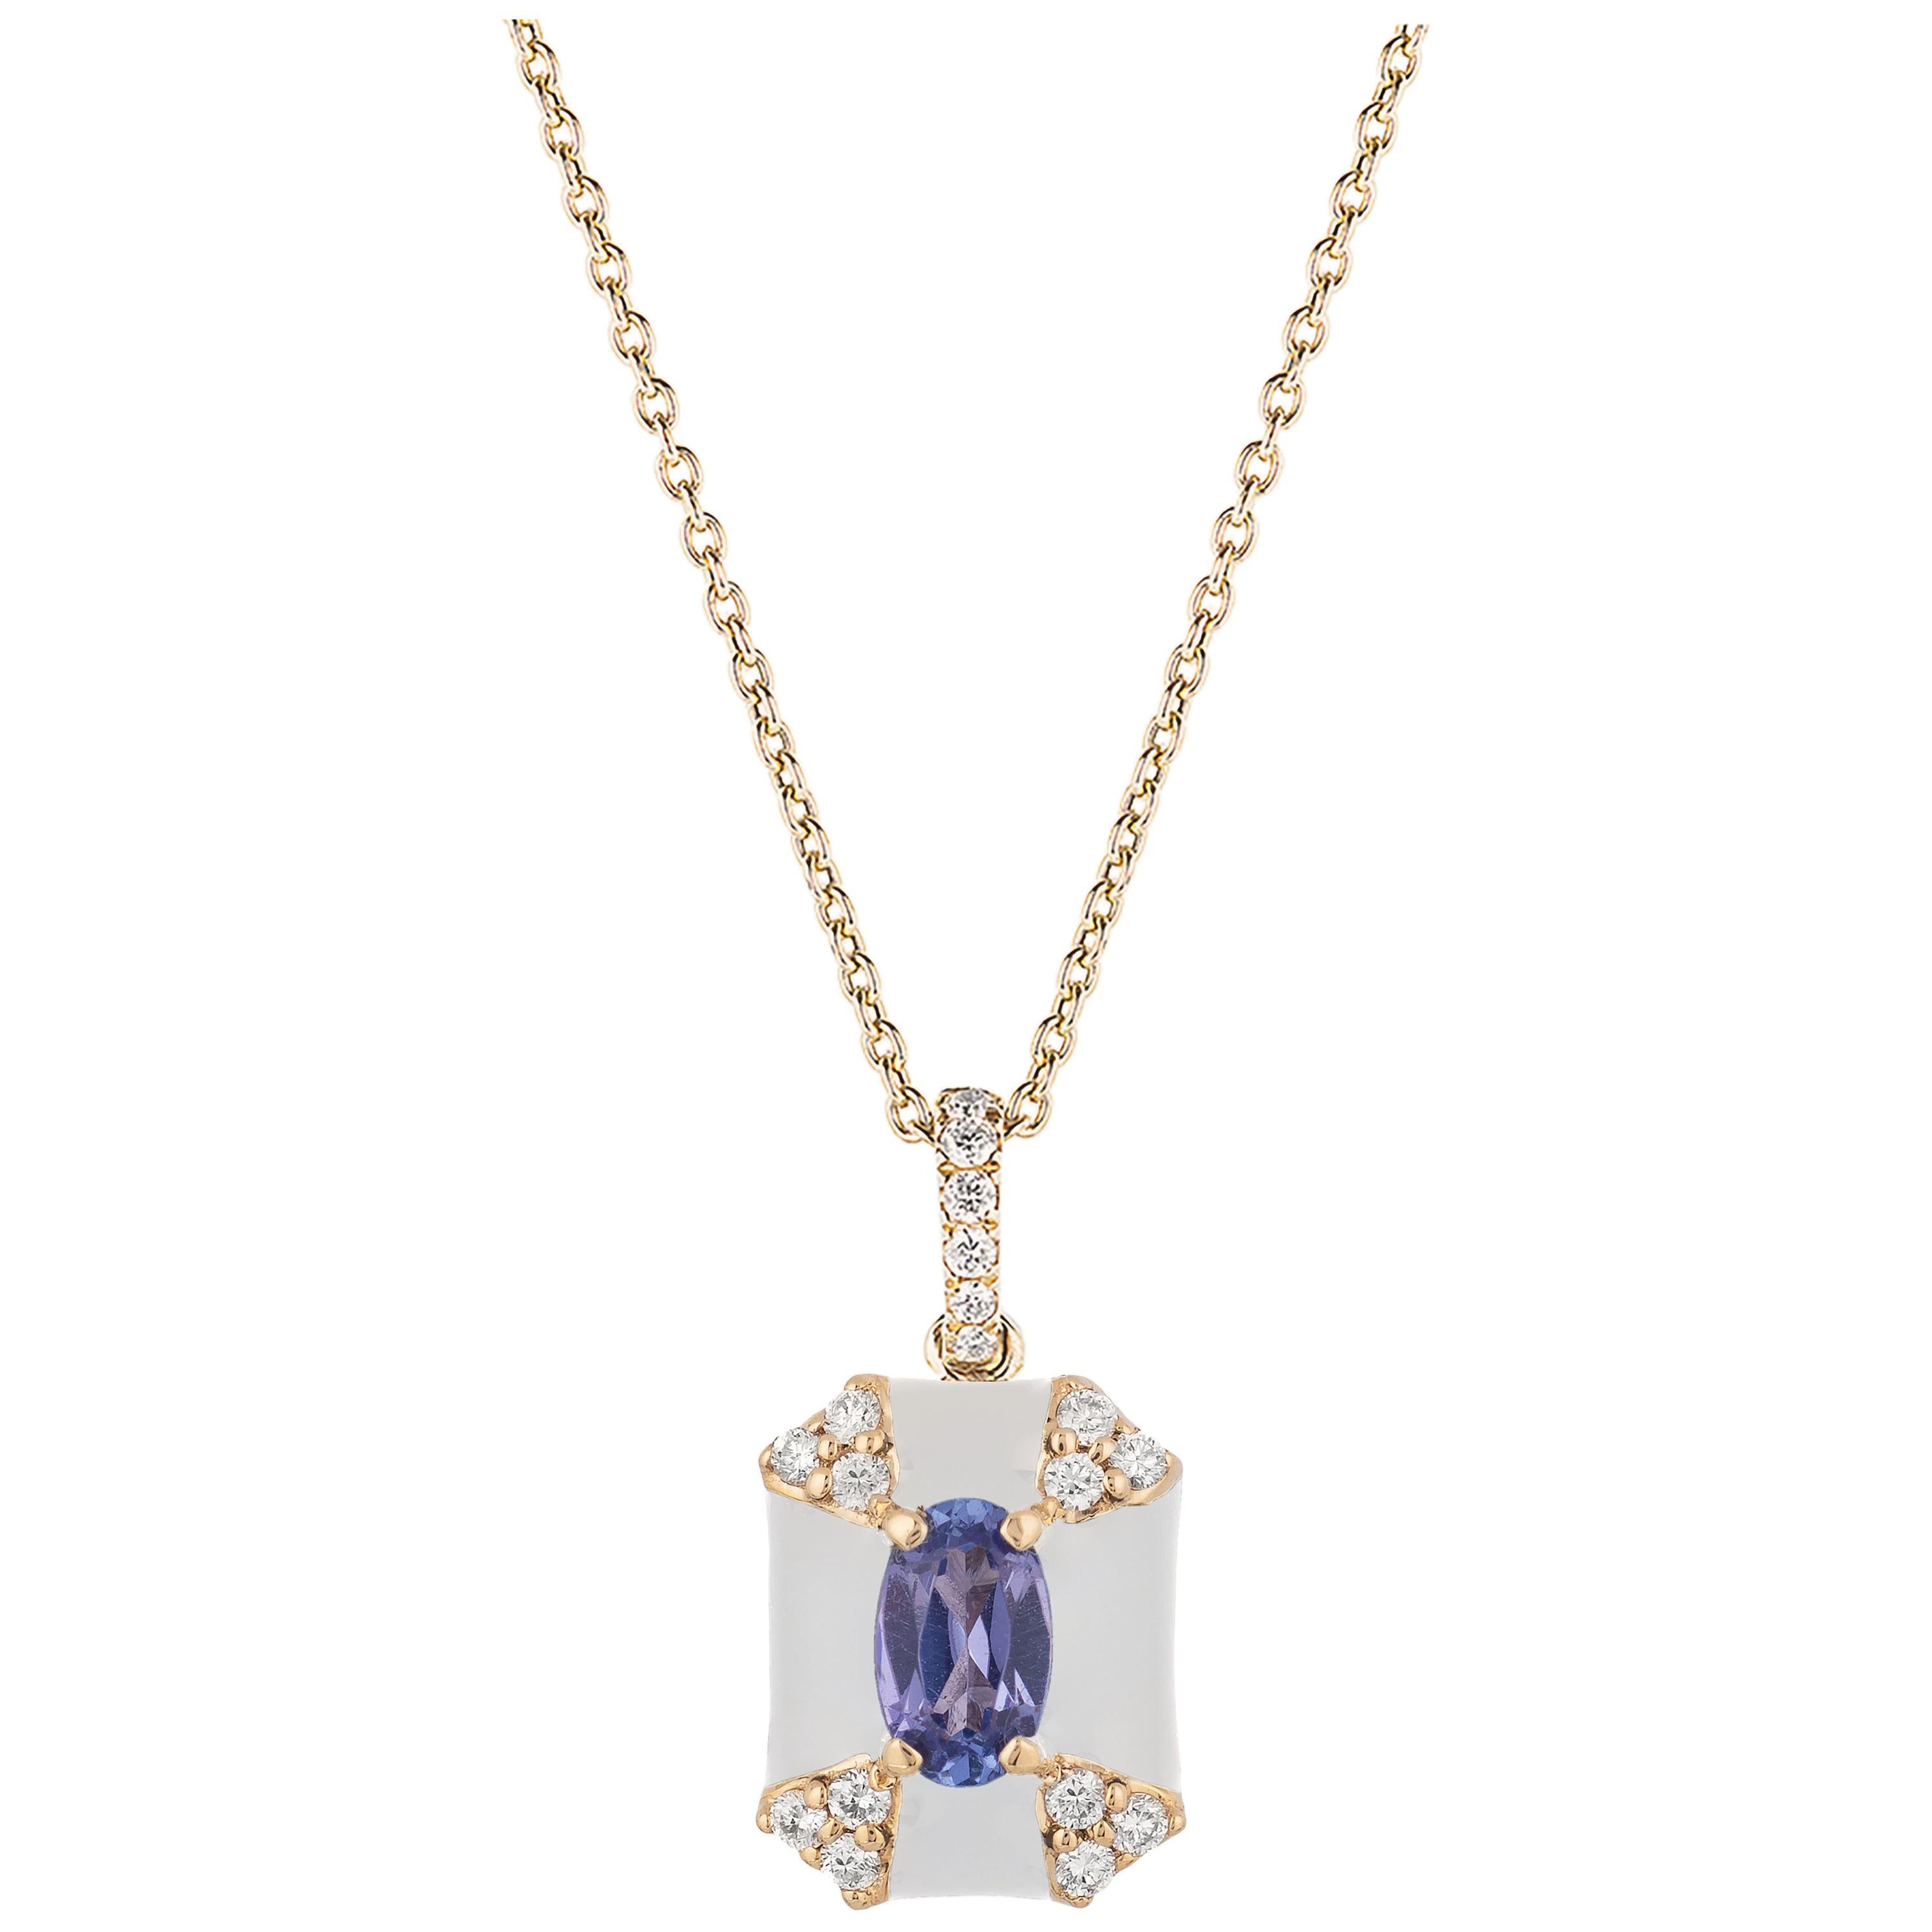 Goshwara Octagon White Enamel with Sapphire and Diamonds Pendant